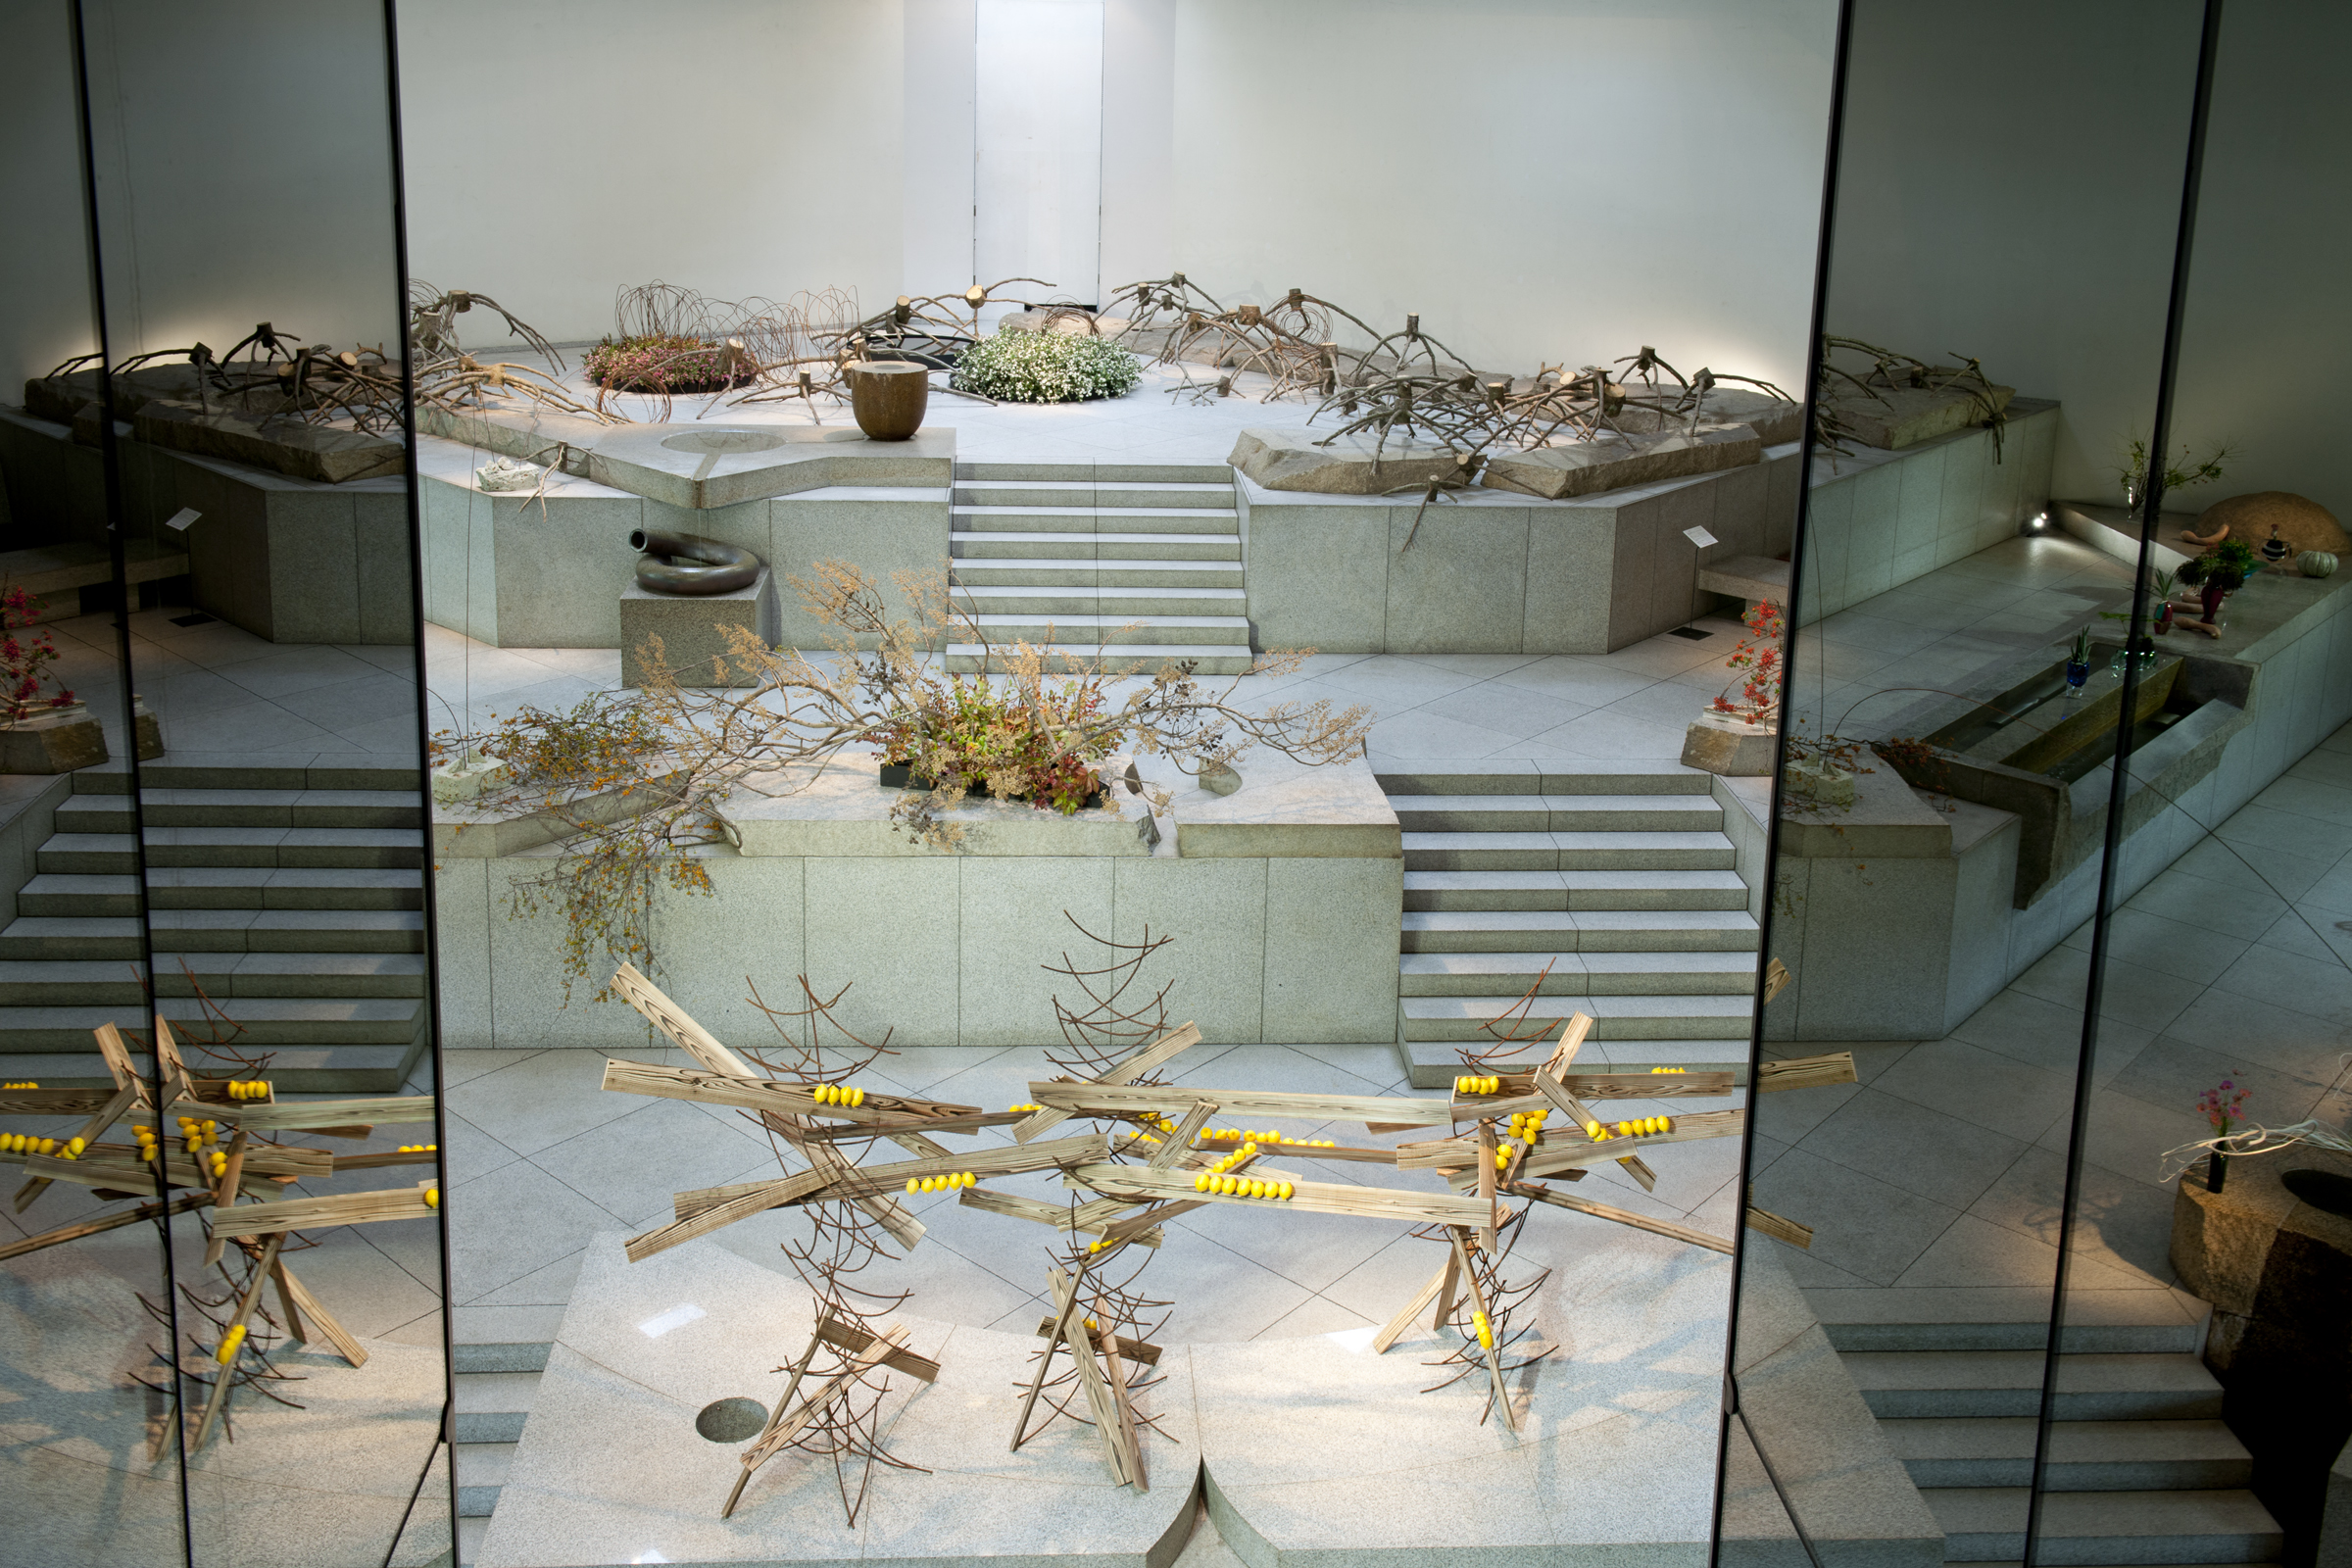 2017  第6回 成城 花のアトリエ展『風ときめく。』<br>
草月会館　草月プラザ<br>
The Sixth Exhibition of Seijo Flower Atelier ”Wind of Anticipation” 
at Sogetsu Plaza